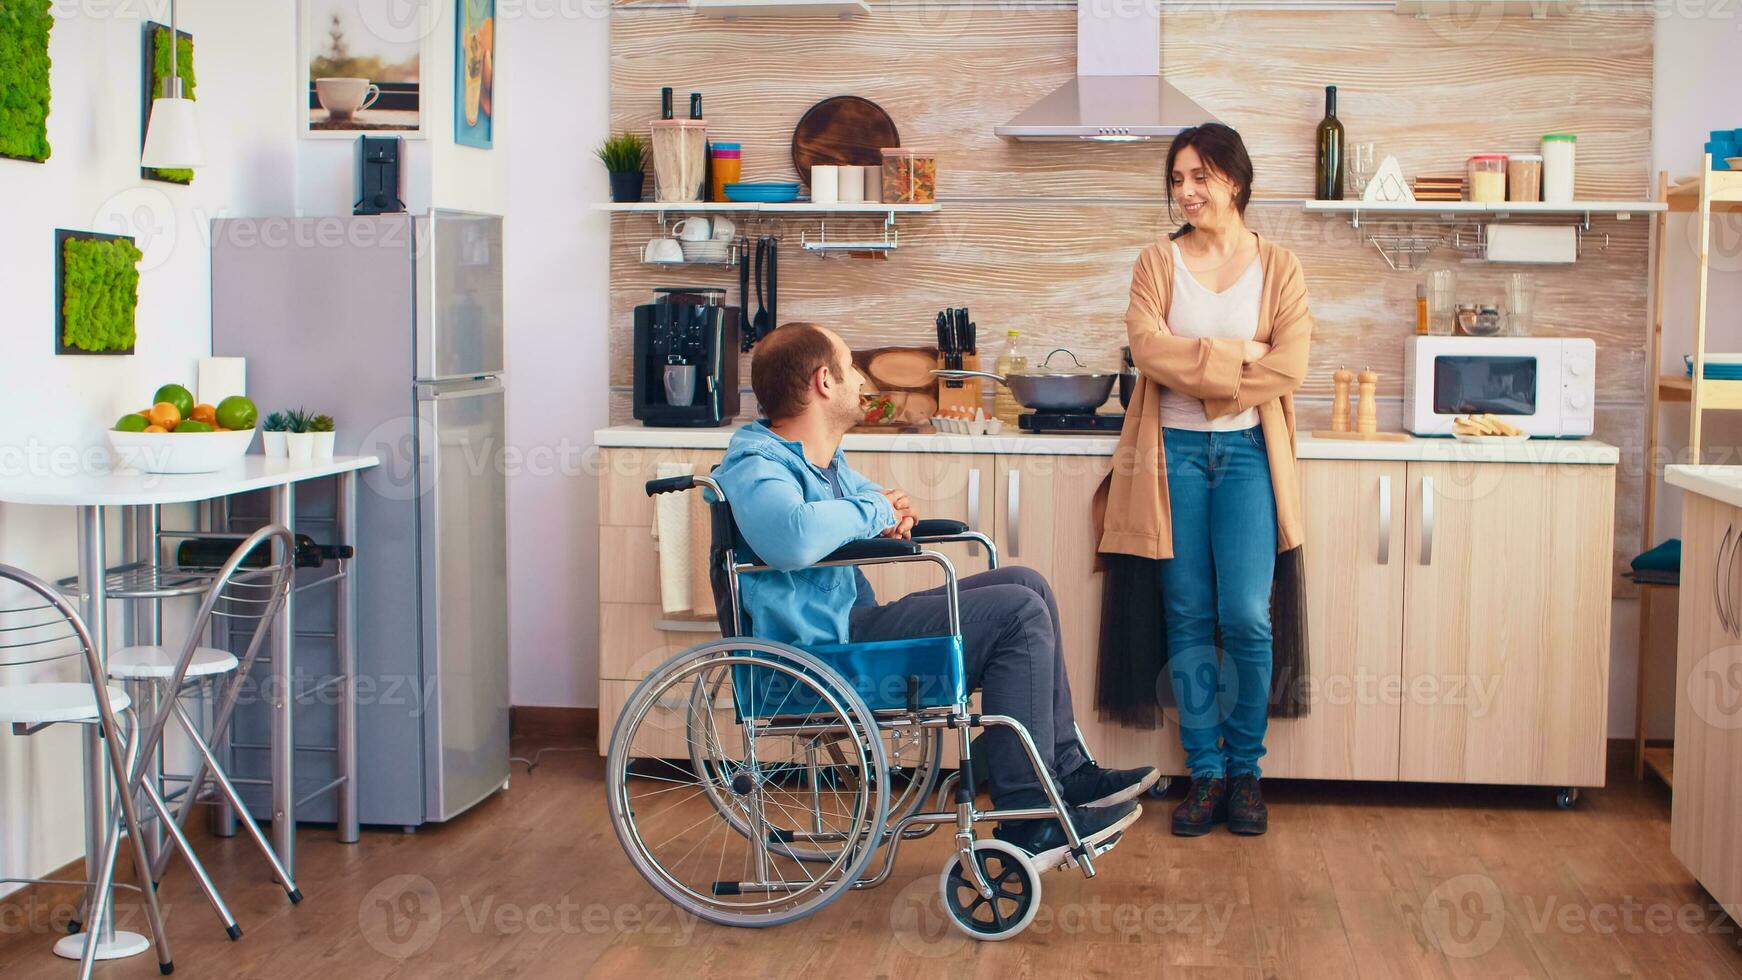 femme souriant à désactivée mari dans fauteuil roulant tandis que parlant avec lui. gars avec paralysie handicap invalidité handicapé des difficultés avoir Aidez-moi pour mobilité de l'amour et relation photo